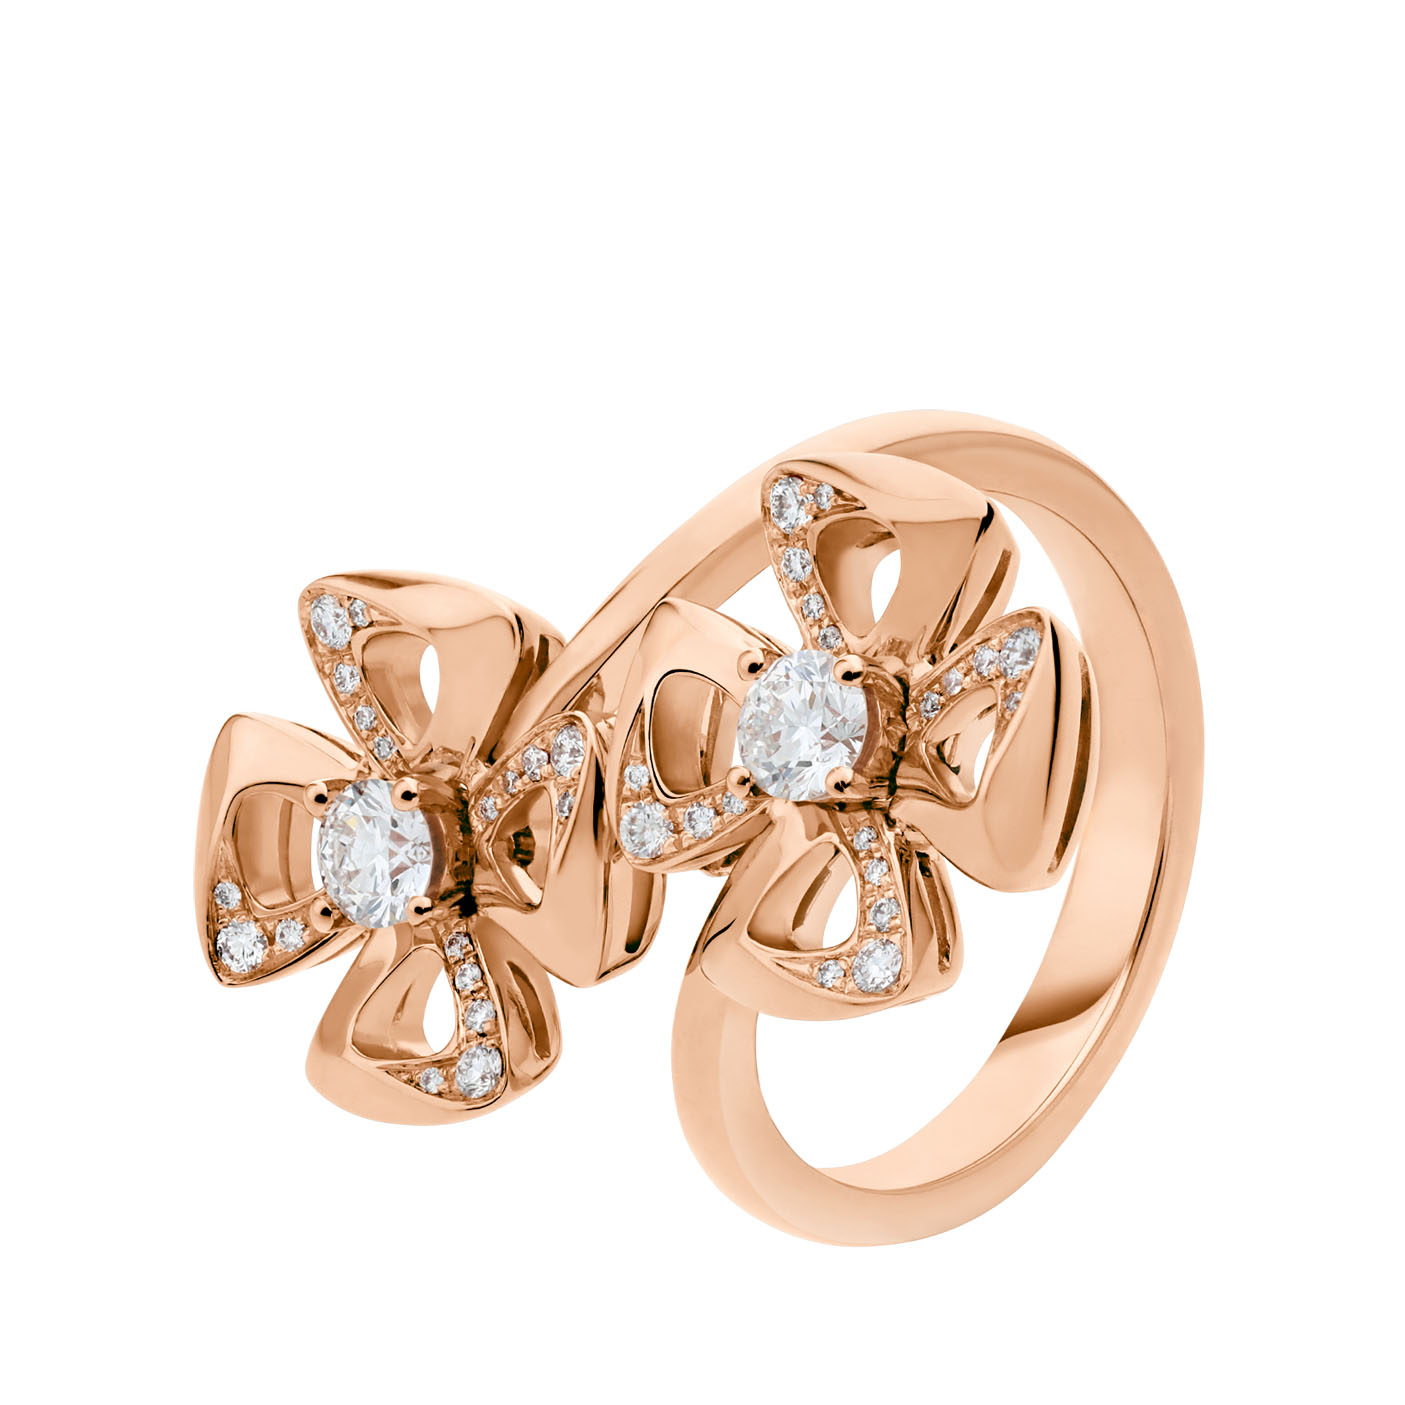 Grosir OEM tinggi OEM/ODM Perhiasan kualitas Cincin liontin dalam emas mawar 18k pada produsen perhiasan perak sterling